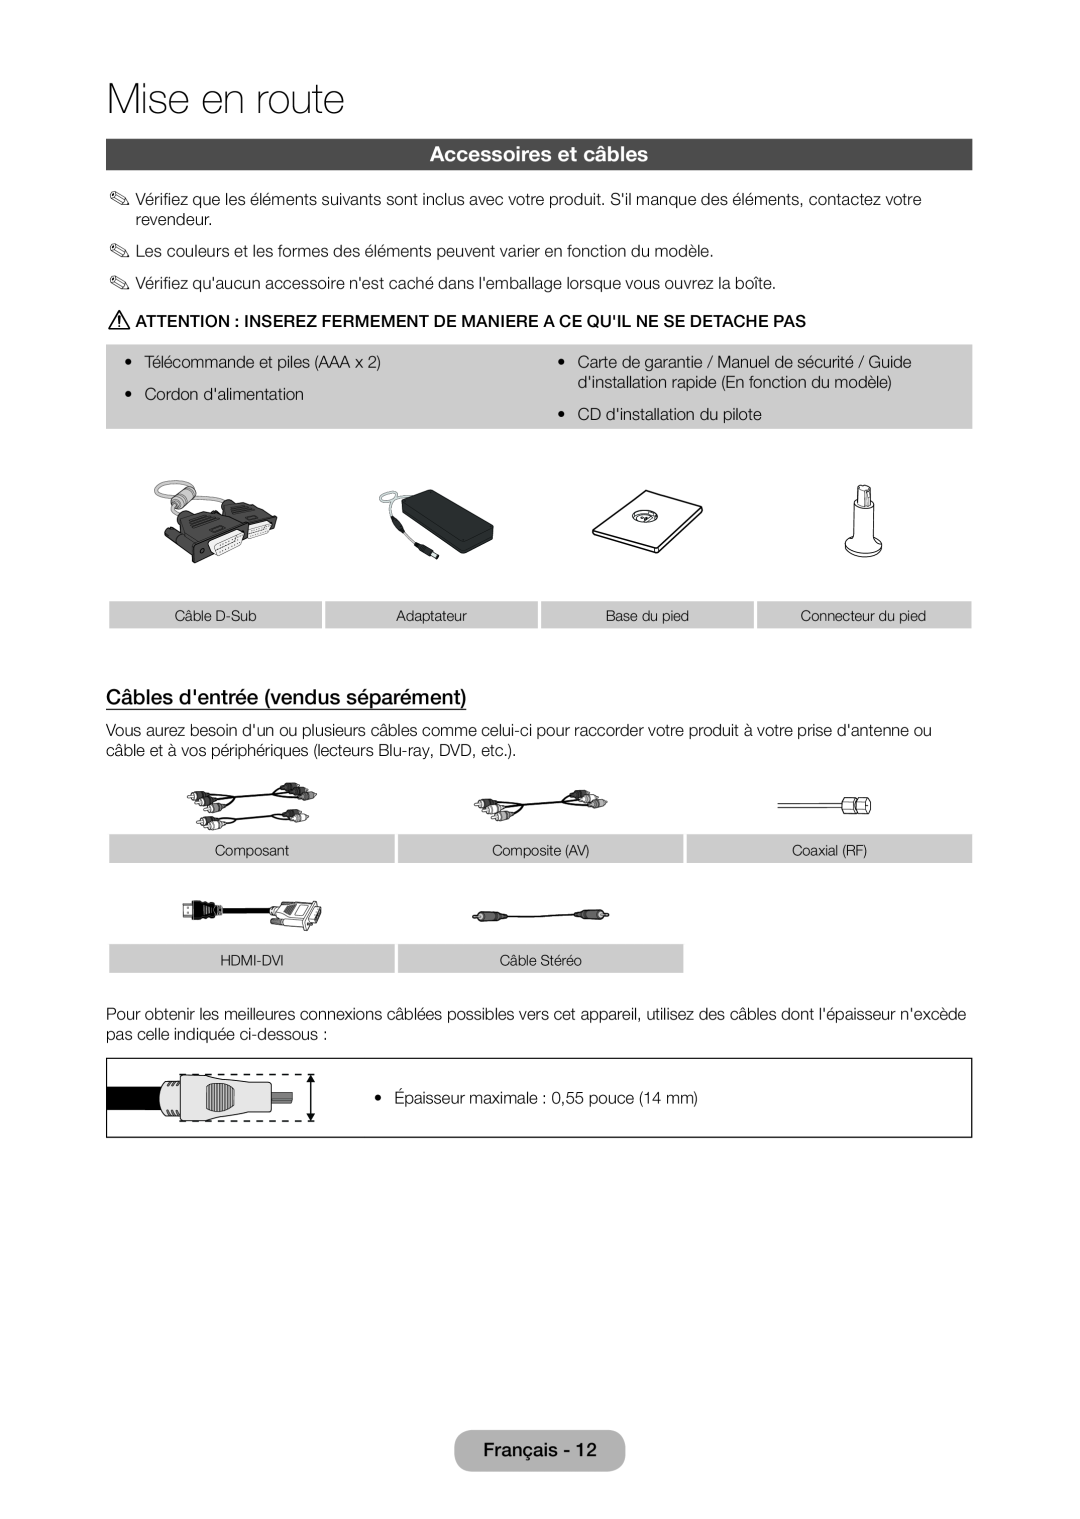 Samsung LT23C350EW/EN, LT22C350EW/EN, LT24C350EW/EN Accessoires et câbles, Câbles dentrée vendus séparément, Mise en route 